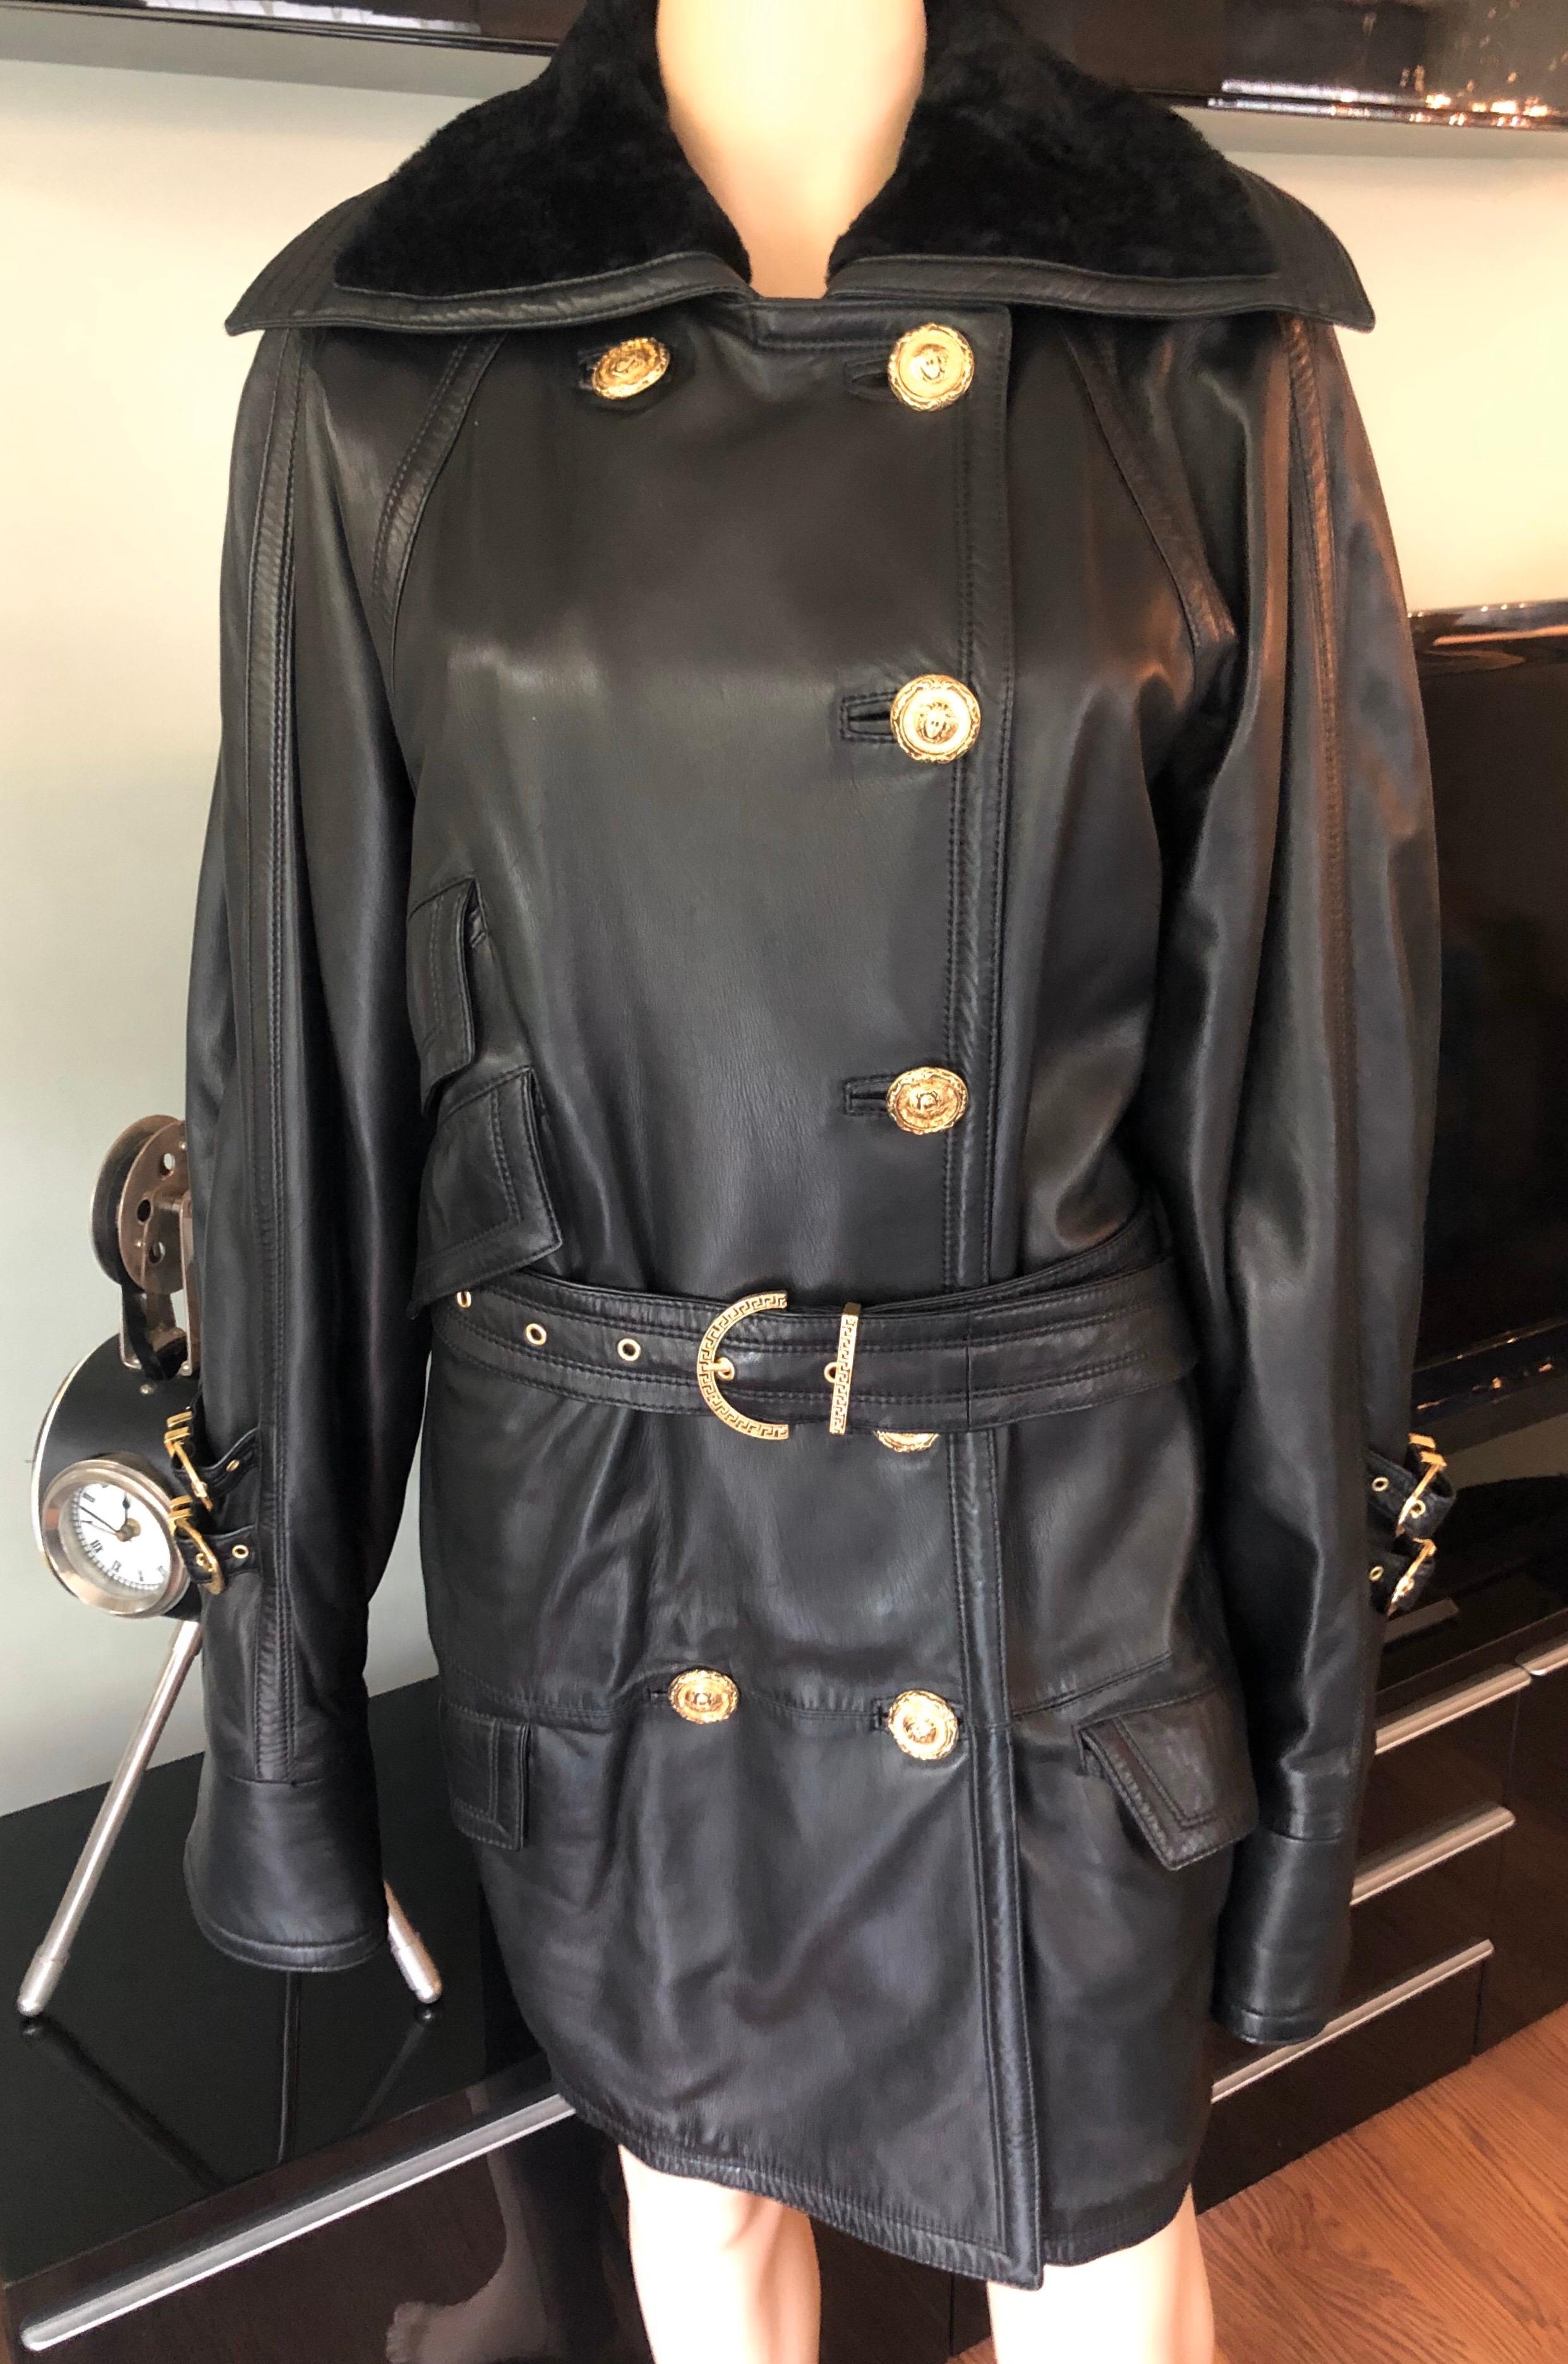 Gianni Versace c. 1990 Bondage Leather Belted Knee-Length Black Jacket ...